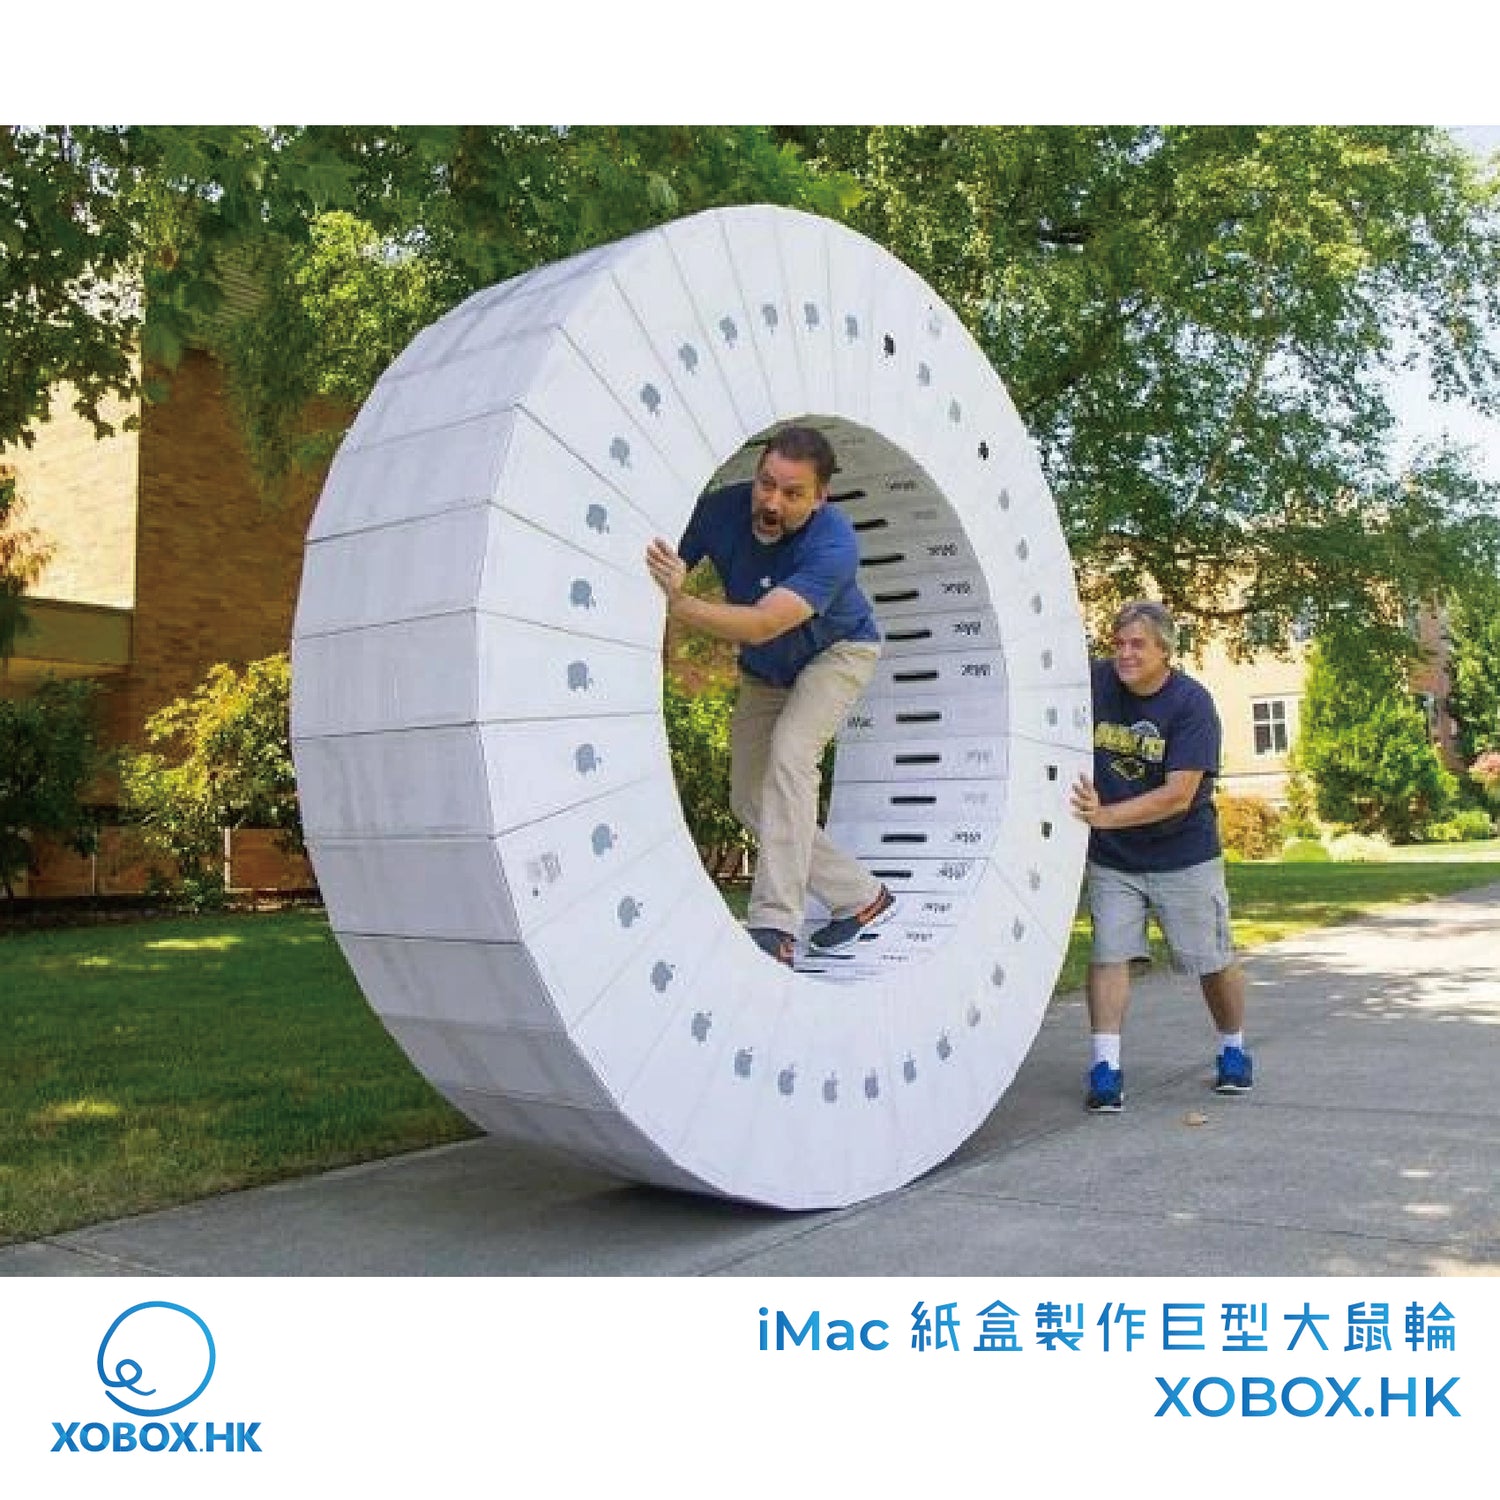 iMac 紙盒製作巨型大鼠輪 | XOBOX.HK